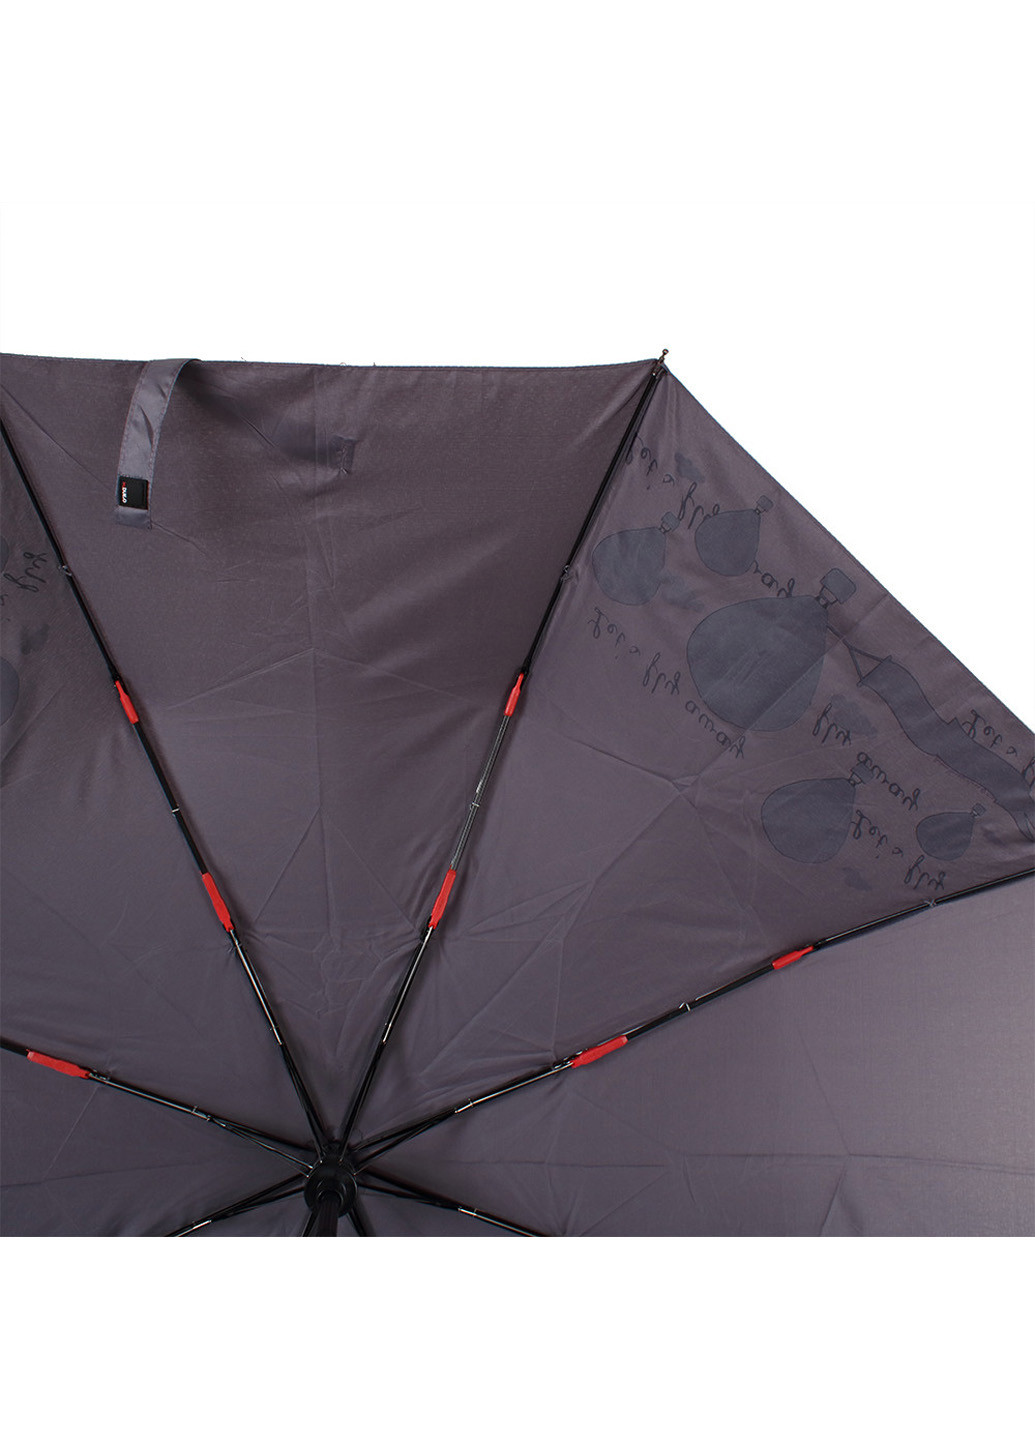 Женский складной зонт полуавтомат 97 см H.DUE.O (194317881)